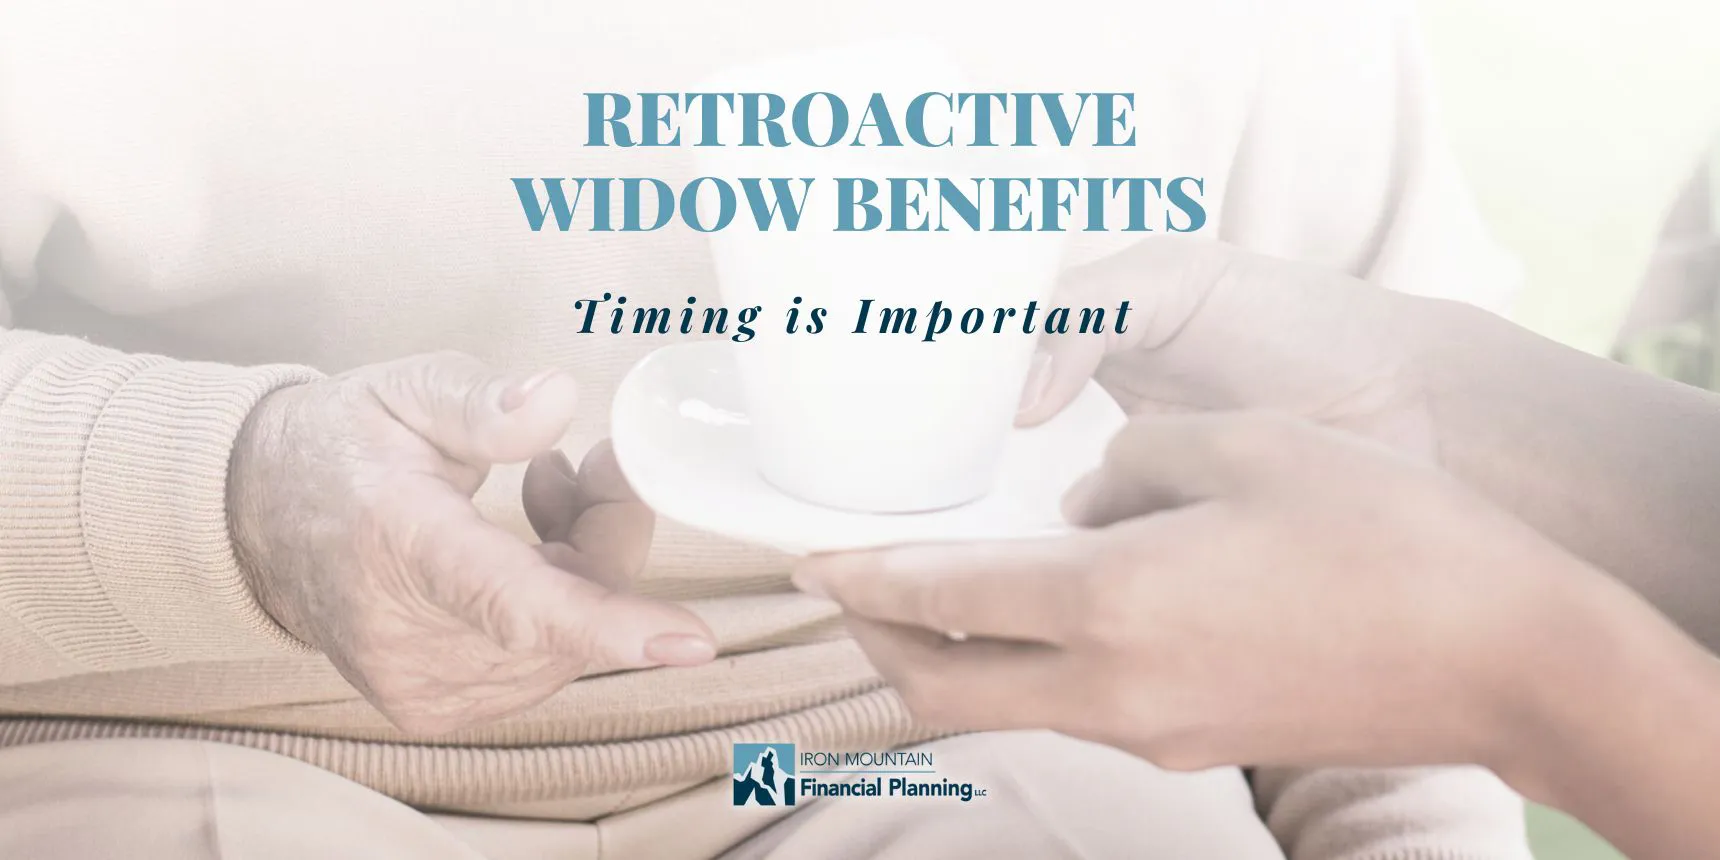 Retroactive Widow Benefits